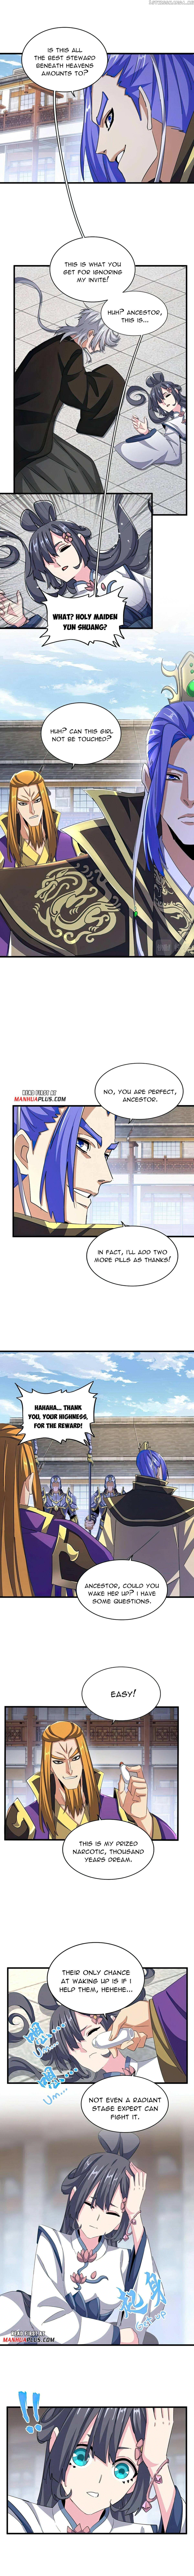 Magic Emperor Chapter 397 page 4 - Mangakakalot